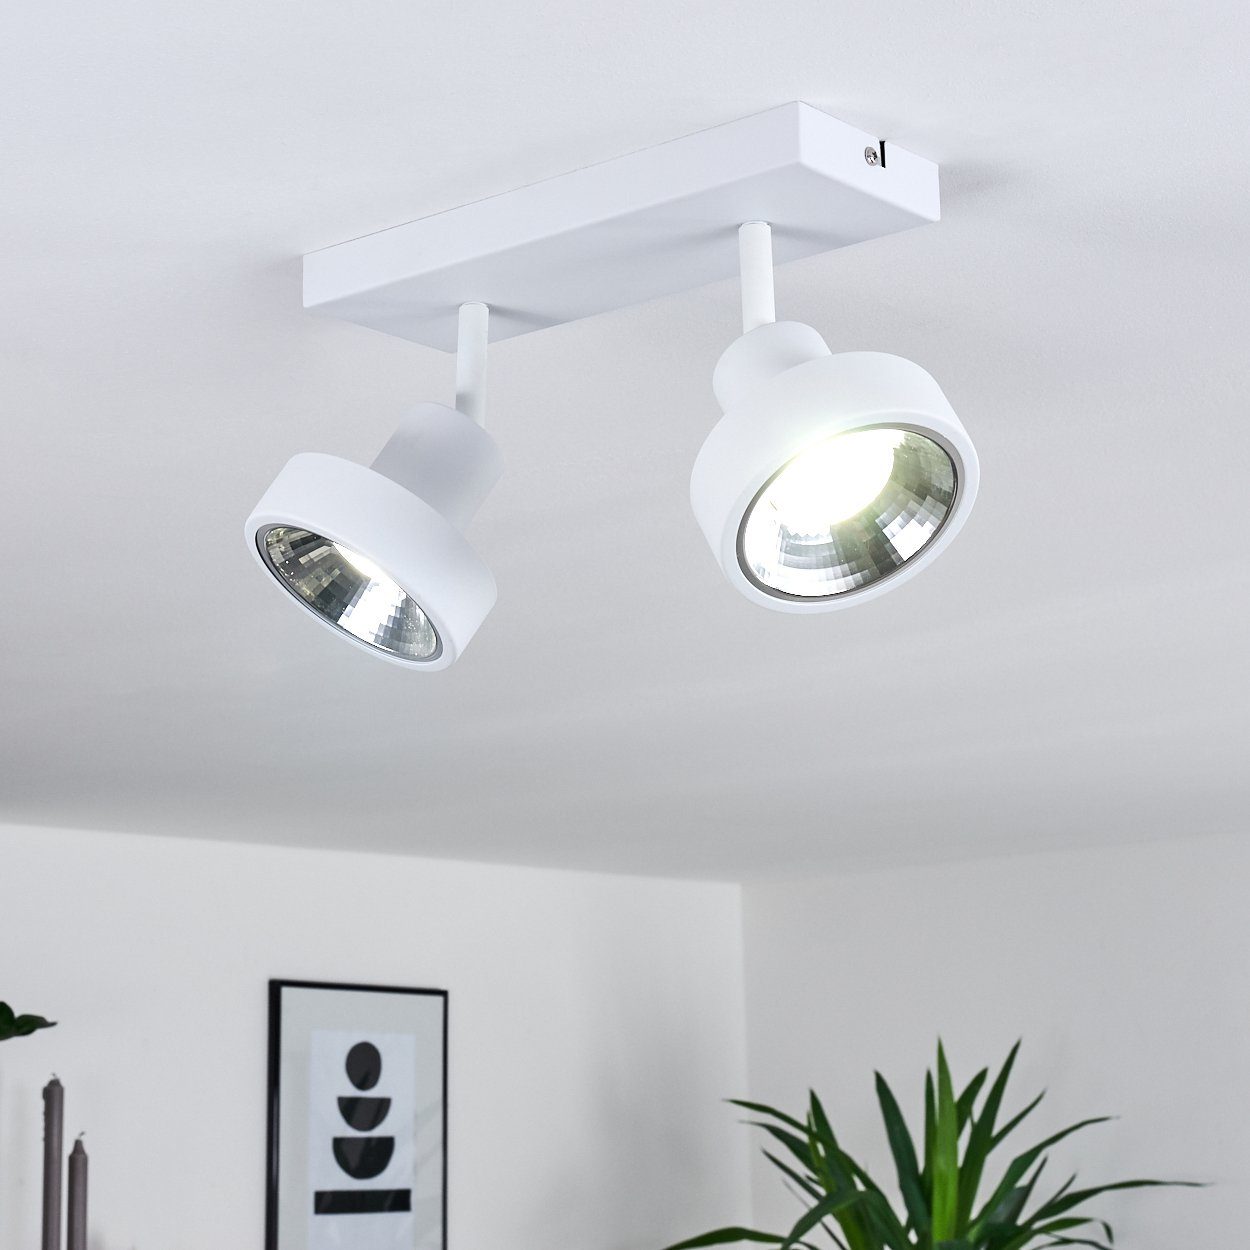 LED Decken Lampe Wohn Schlaf Zimmer Beleuchtung Flur Dielen Strahler Chrom-weiß 